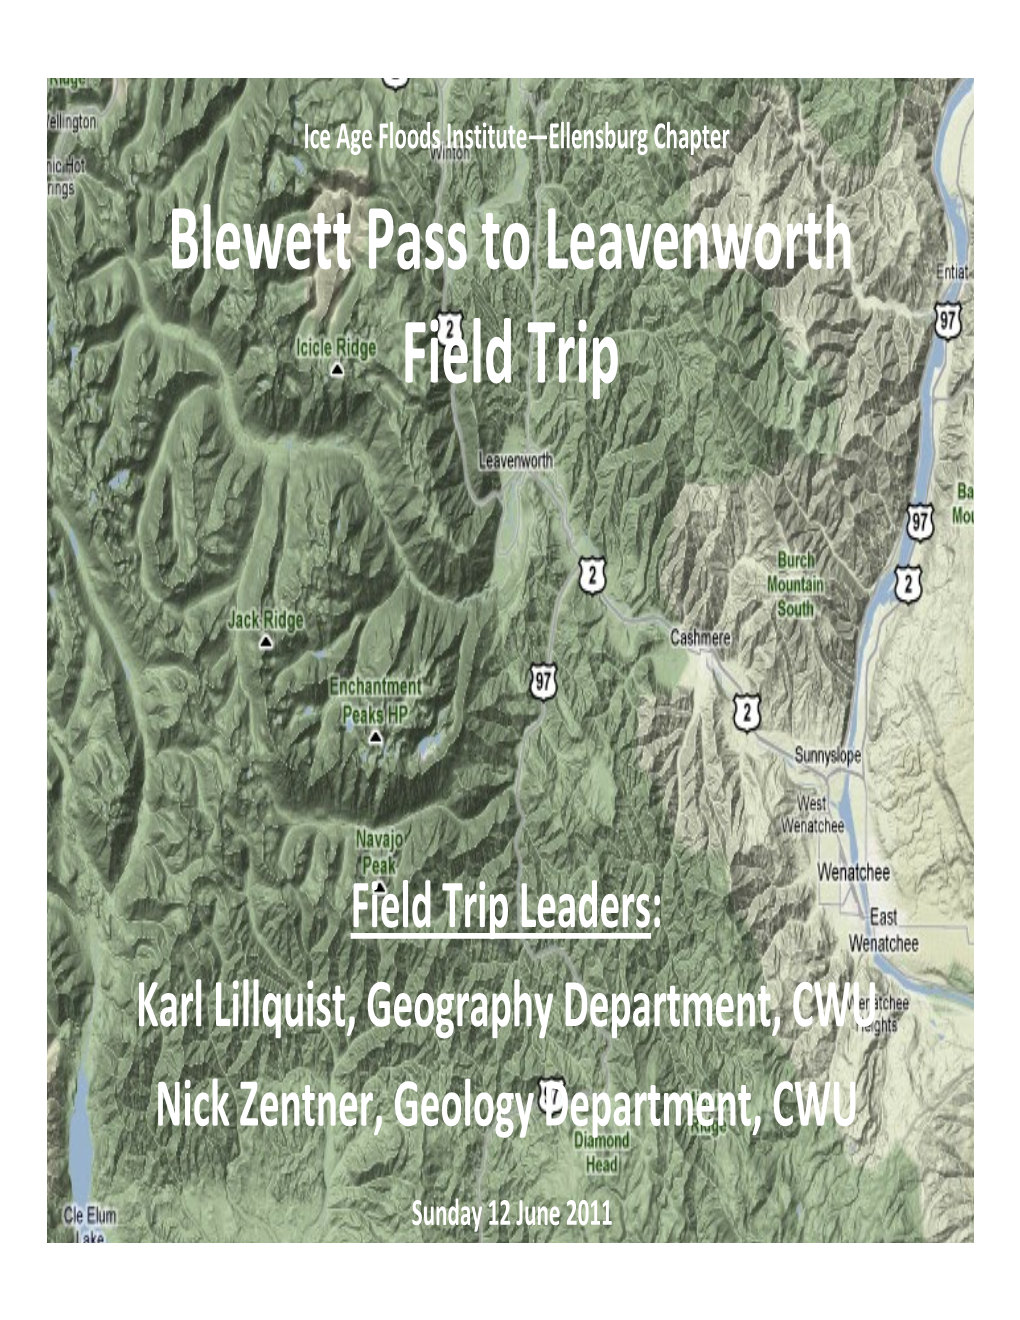 Blewett Pass to Leavenworth Field Trip